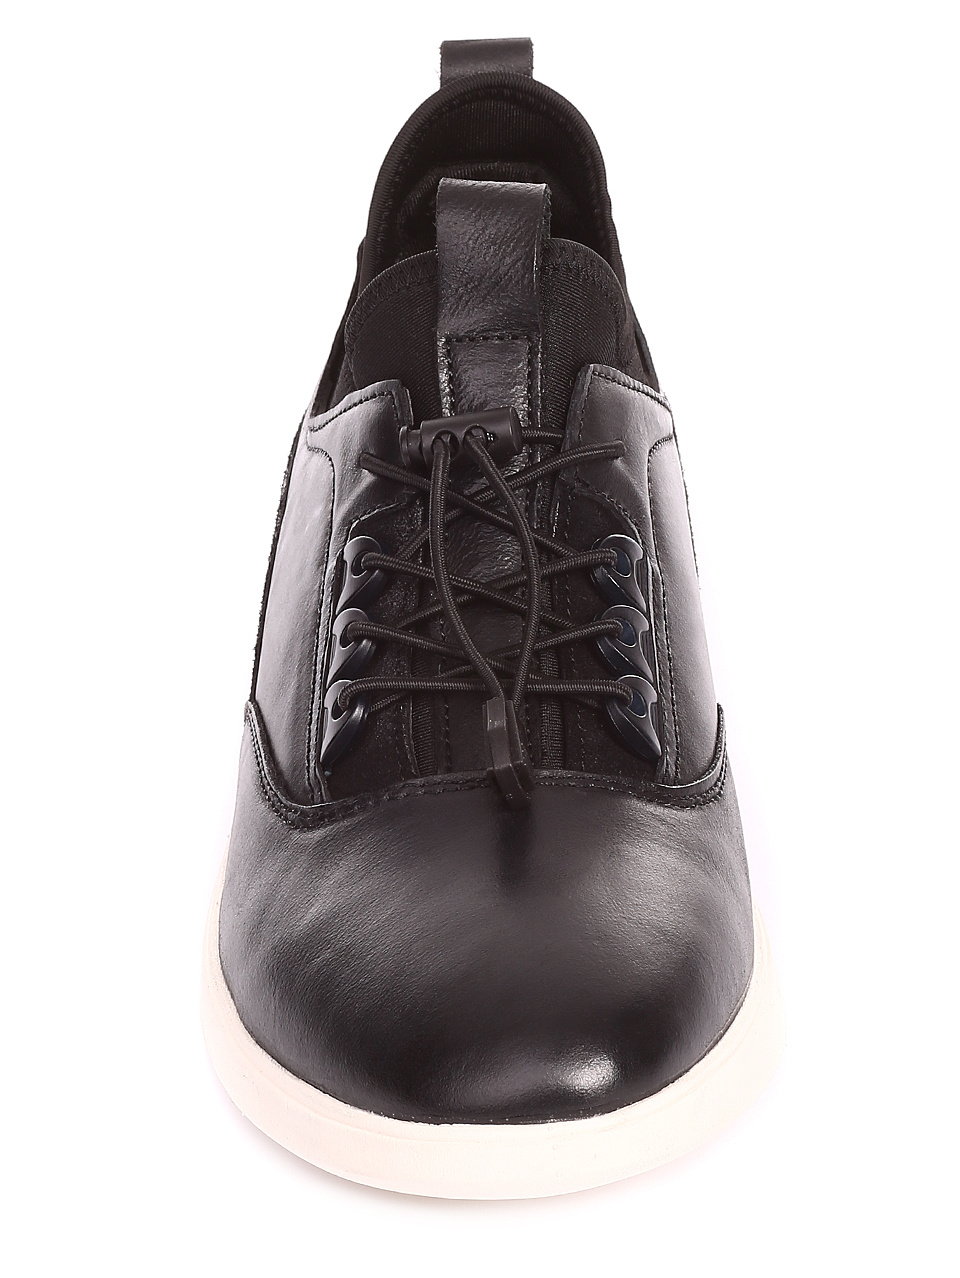 Ежедневни мъжки обувки от естествена кожа 7N-20238 black